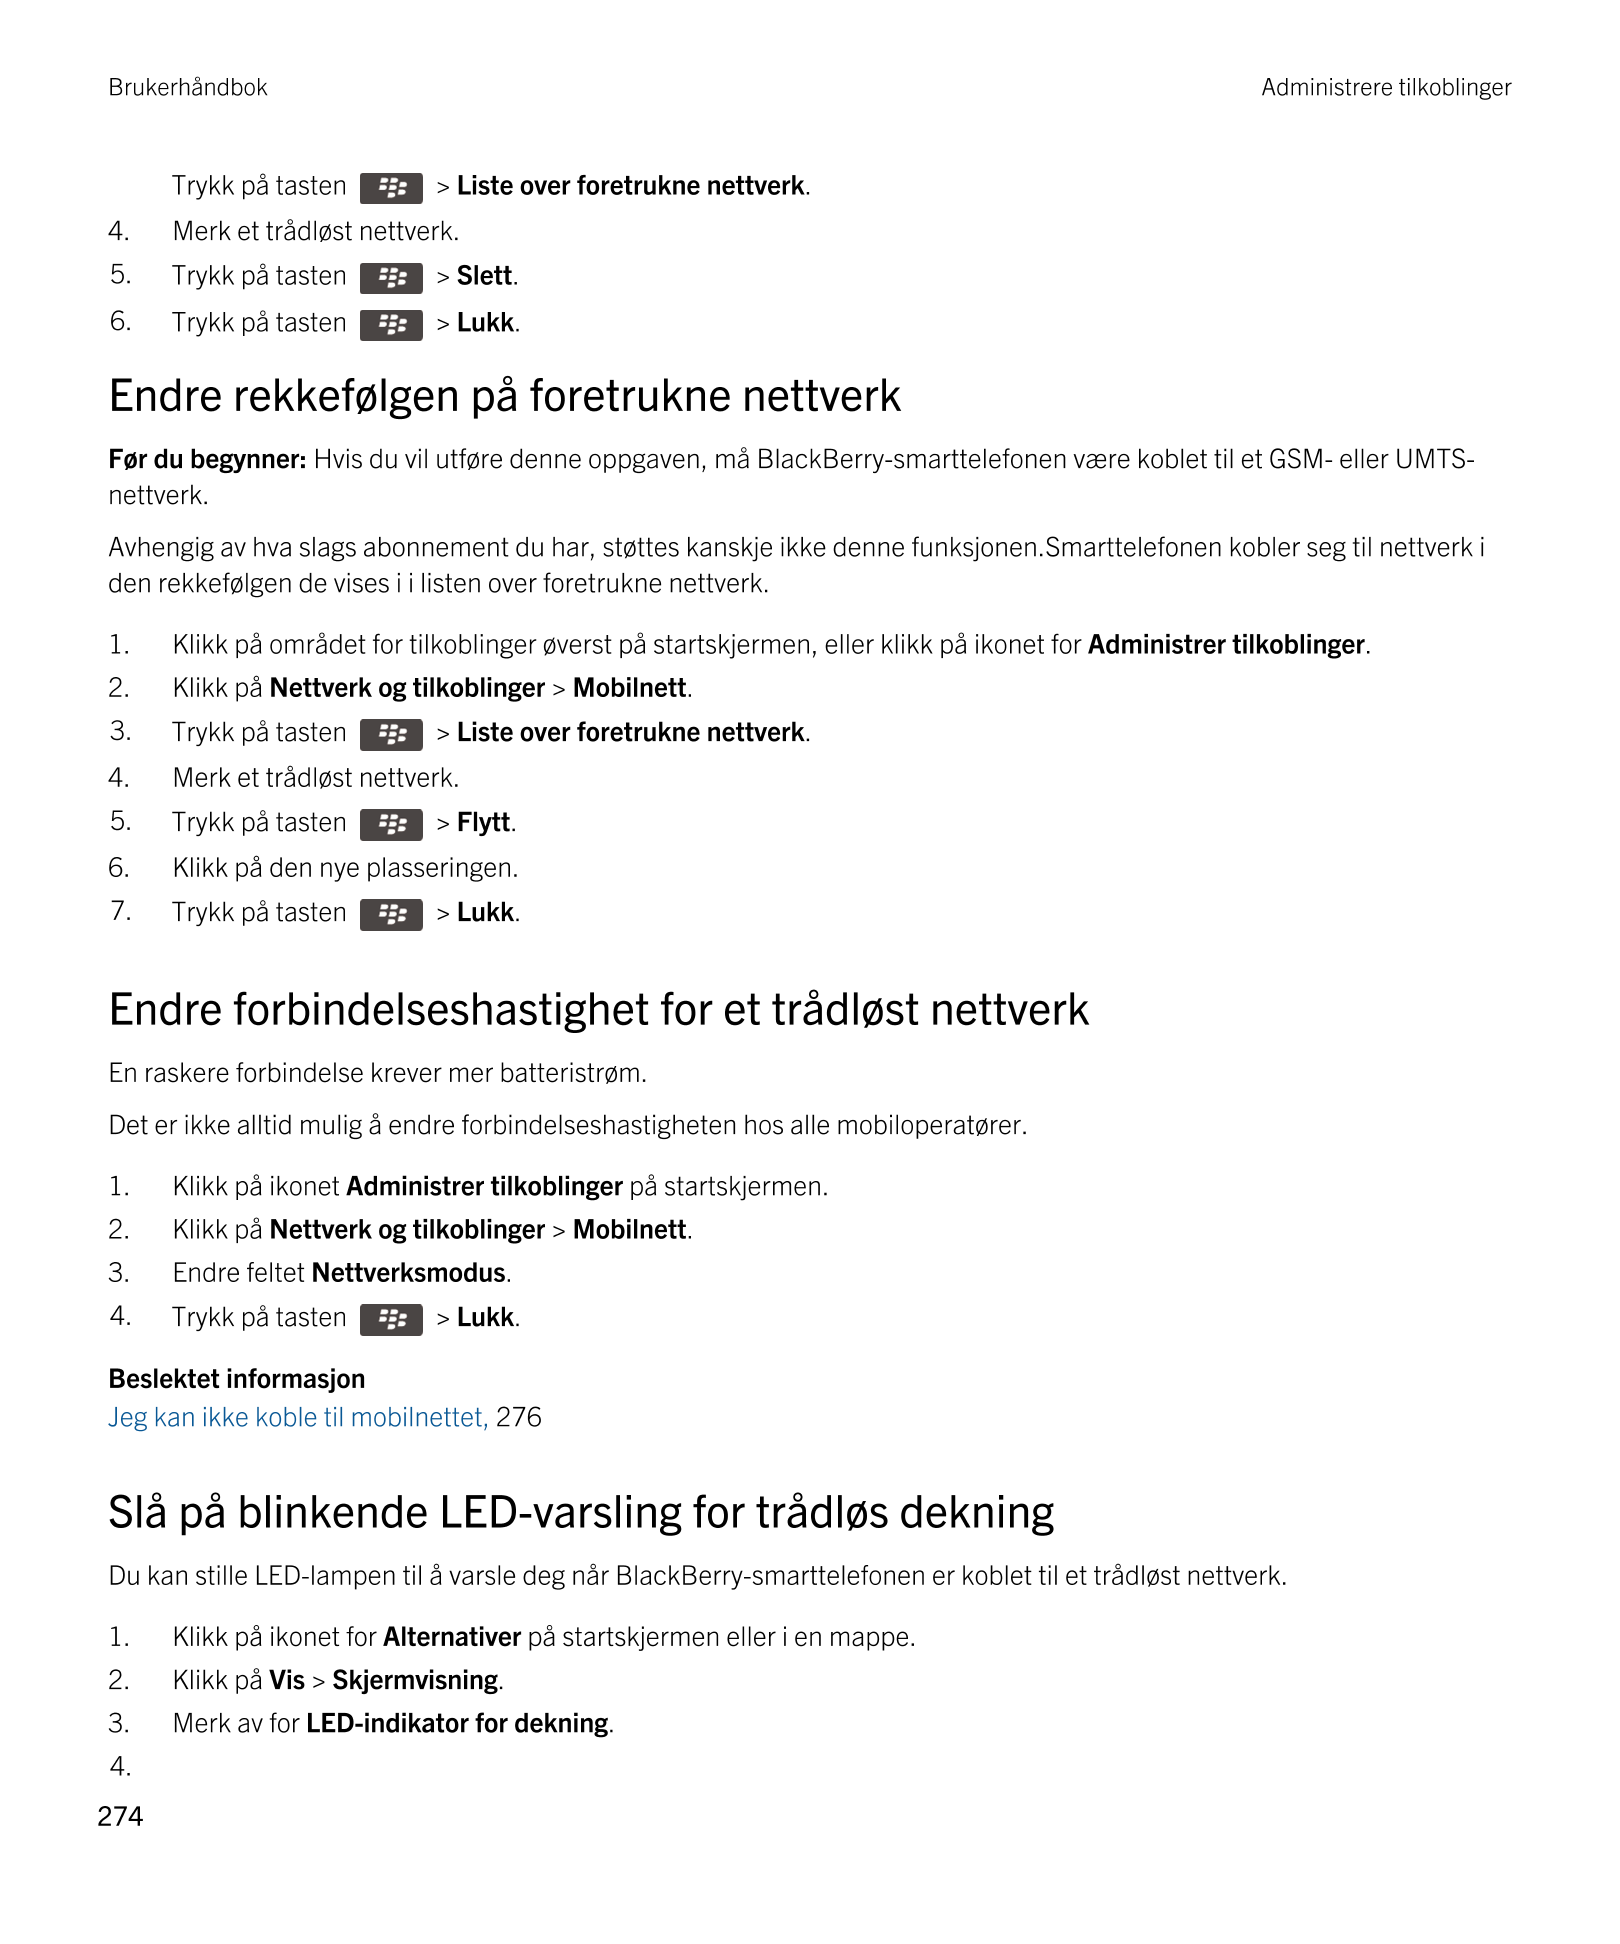 Brukerhåndbok Administrere tilkoblinger
Trykk på tasten    >  Liste over foretrukne nettverk. 
4. Merk et trådløst nettverk.
5. 